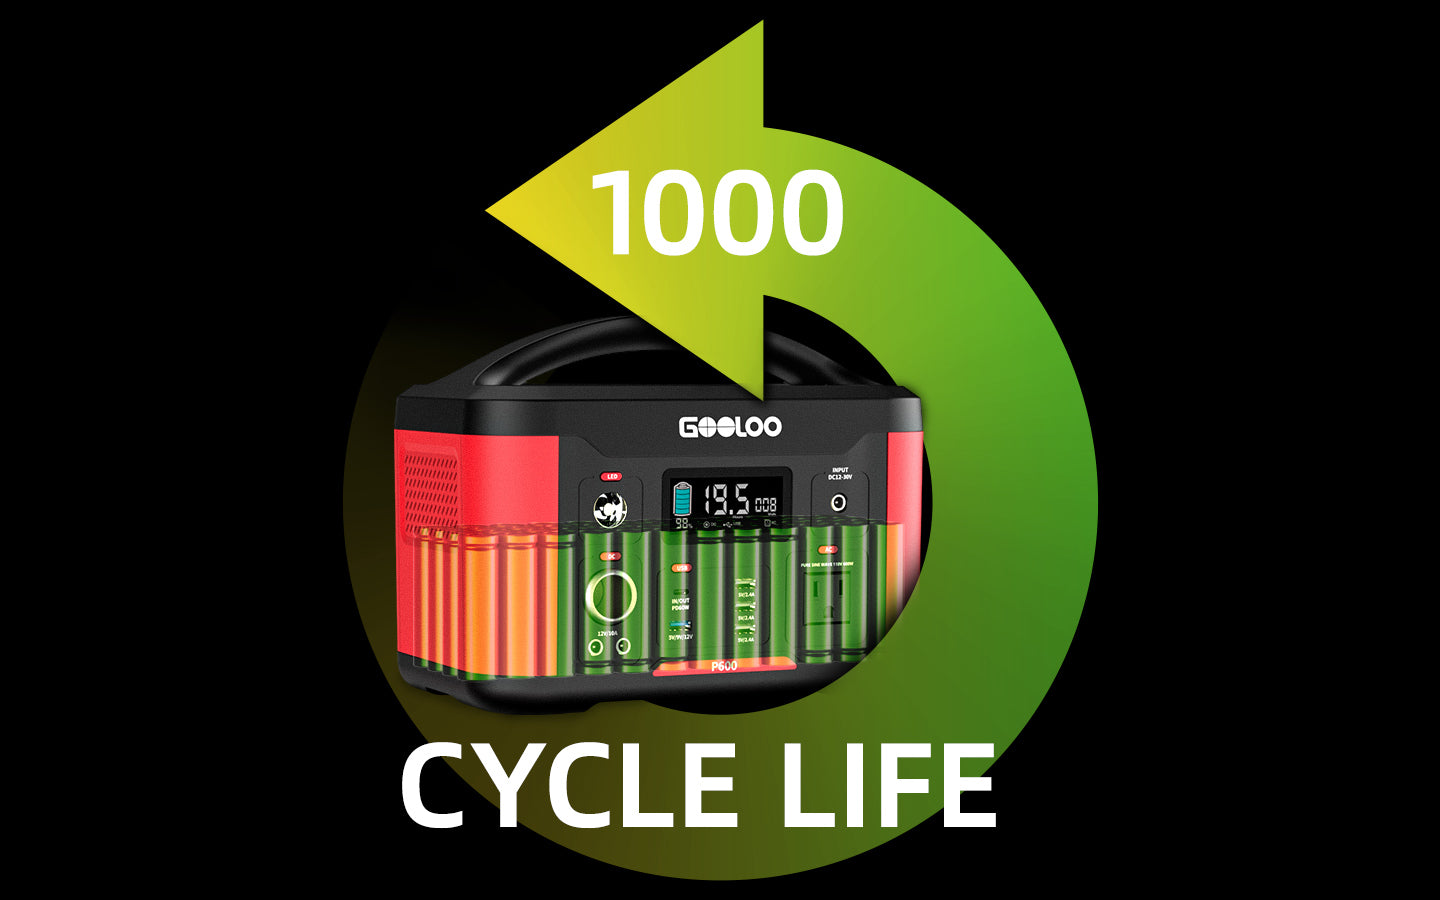 Durée de vie de la batterie 1000 fois 18650 batteries